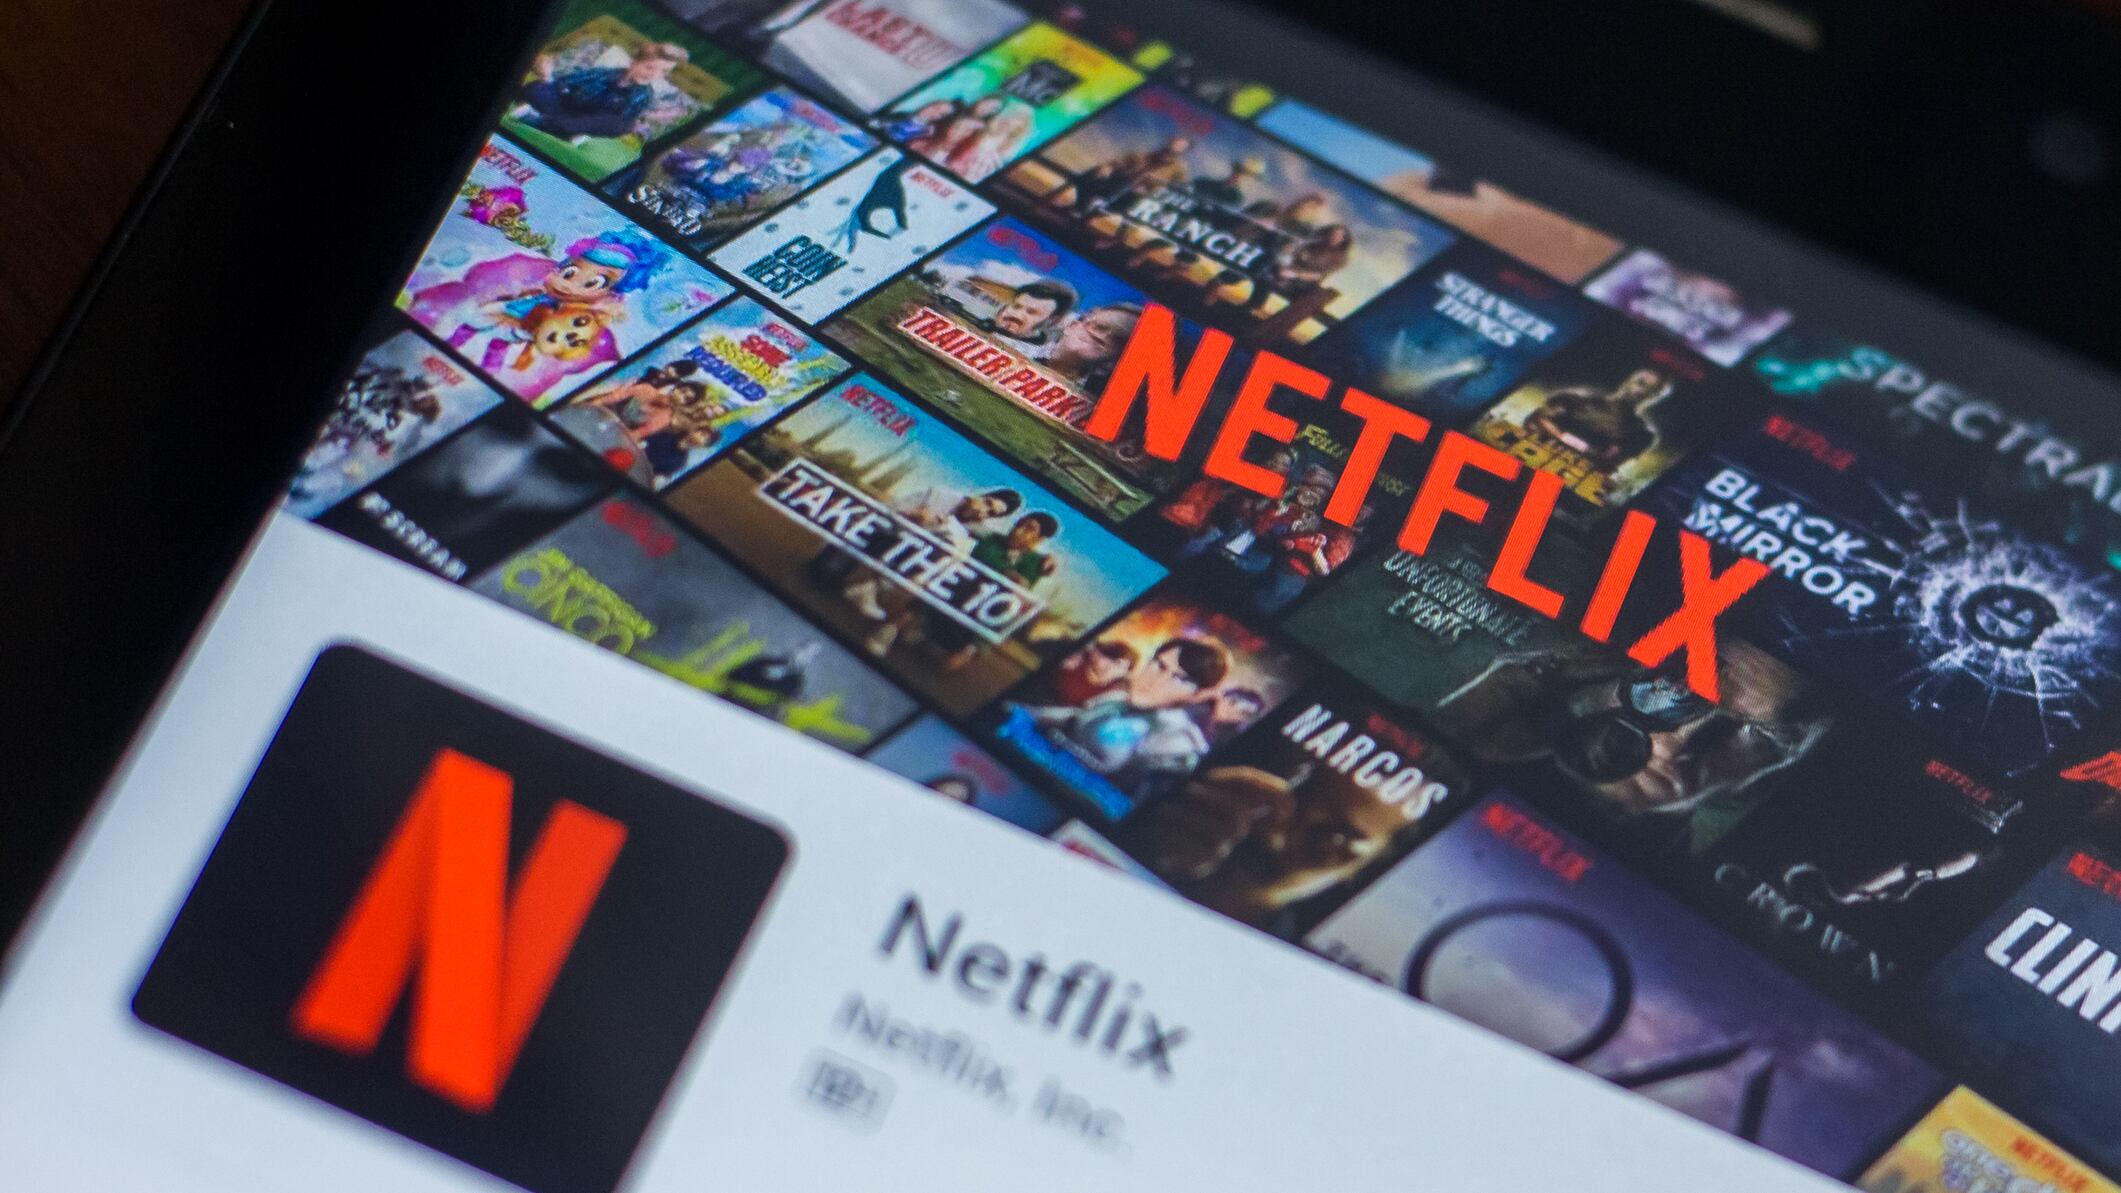 Netflix cobrará 69 pesos mensuales por agregar suscriptor extra